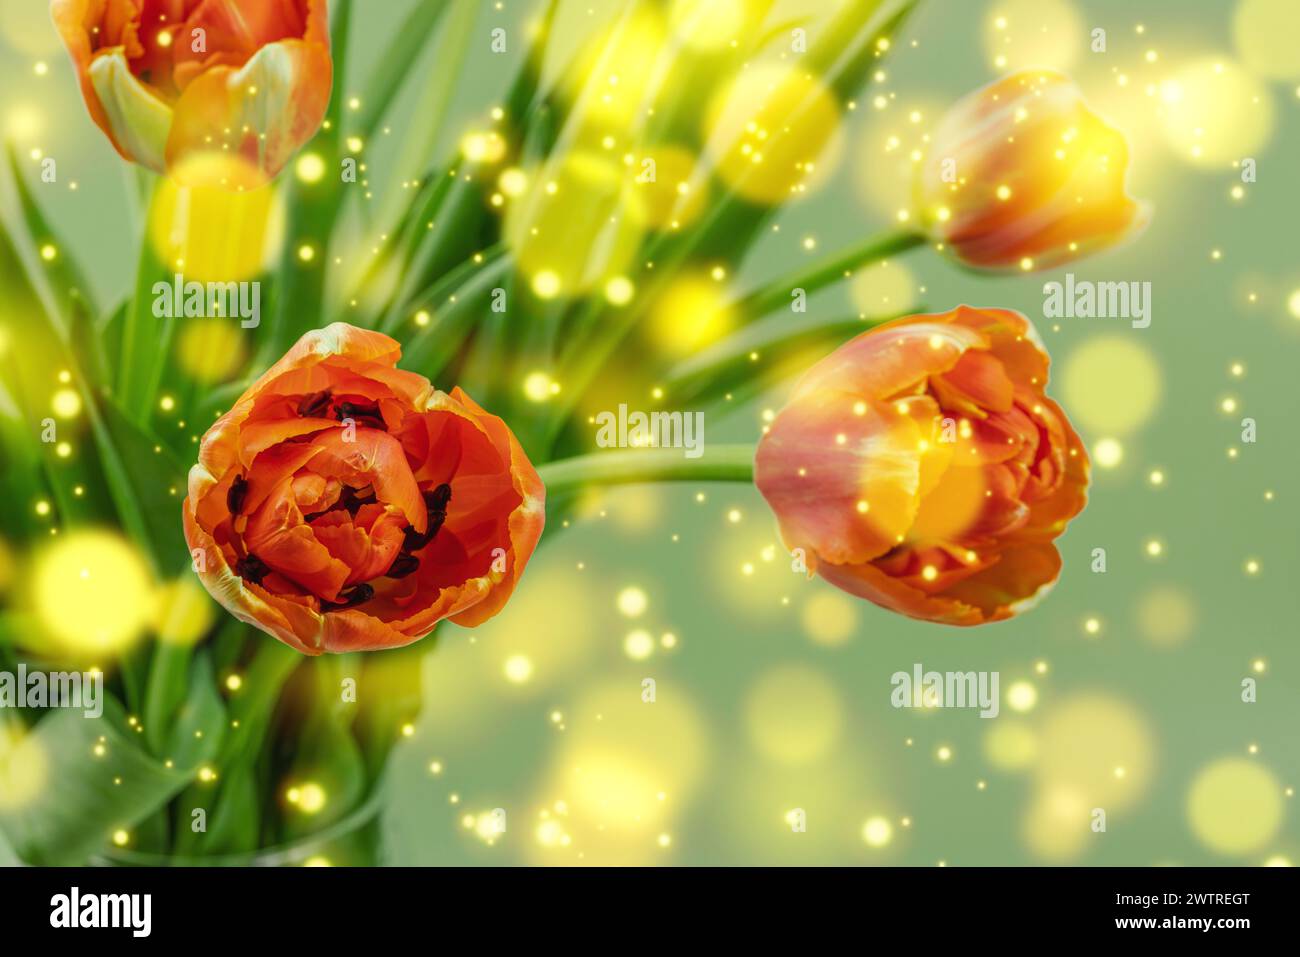 Leuchtend orange Tulpen auf pastellgrünem Hintergrund. Festliches Konzept für Muttertag oder Valentinstag. Grußkarte, Osterliege, beste Wünsche, c Stockfoto